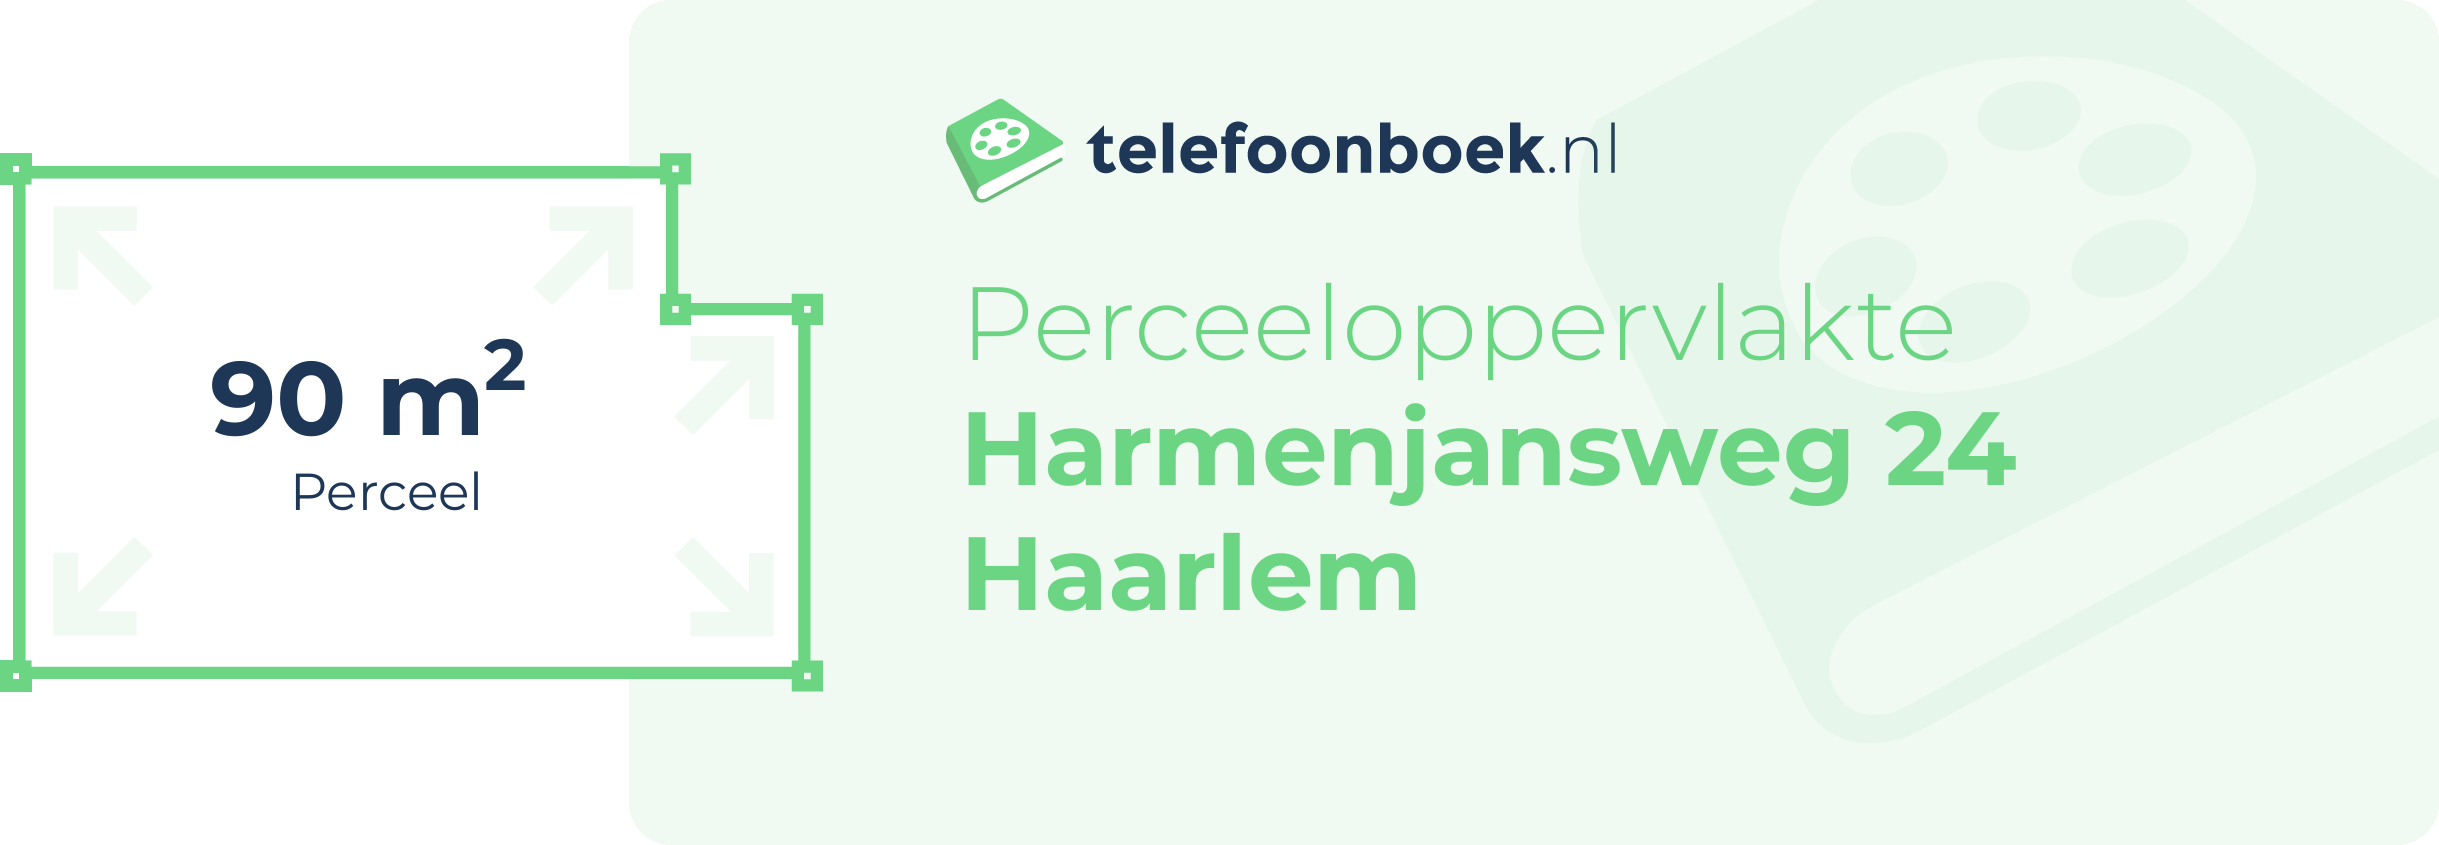 Perceeloppervlakte Harmenjansweg 24 Haarlem